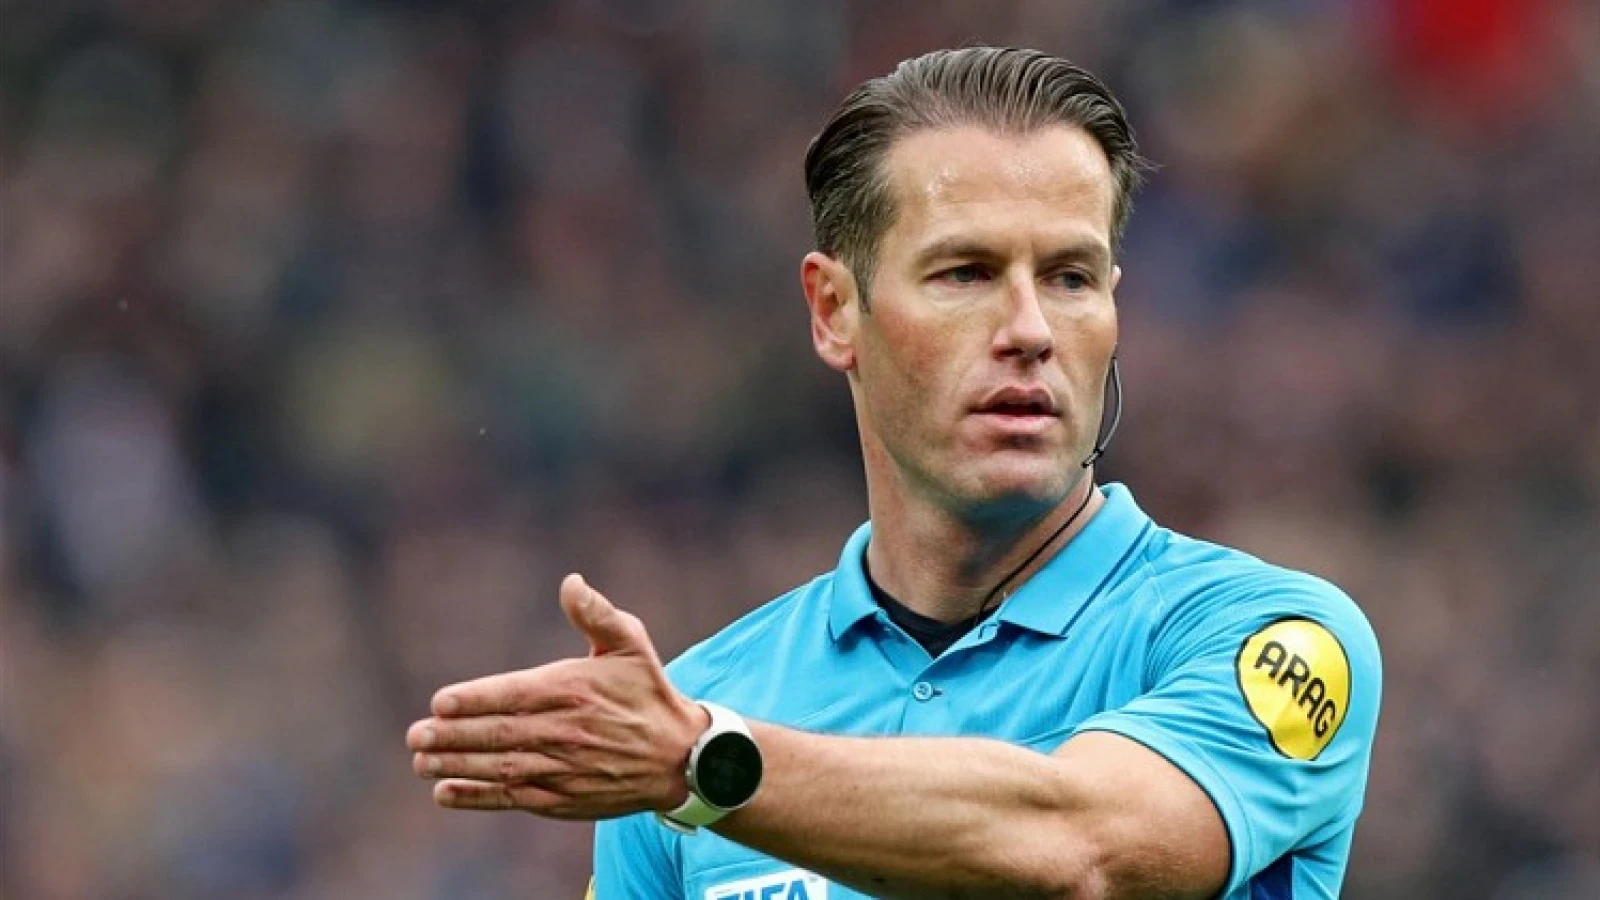 Danny Makkelie scheidsrechter tijdens wedstrijd tussen Feyenoord en RKC Waalwijk